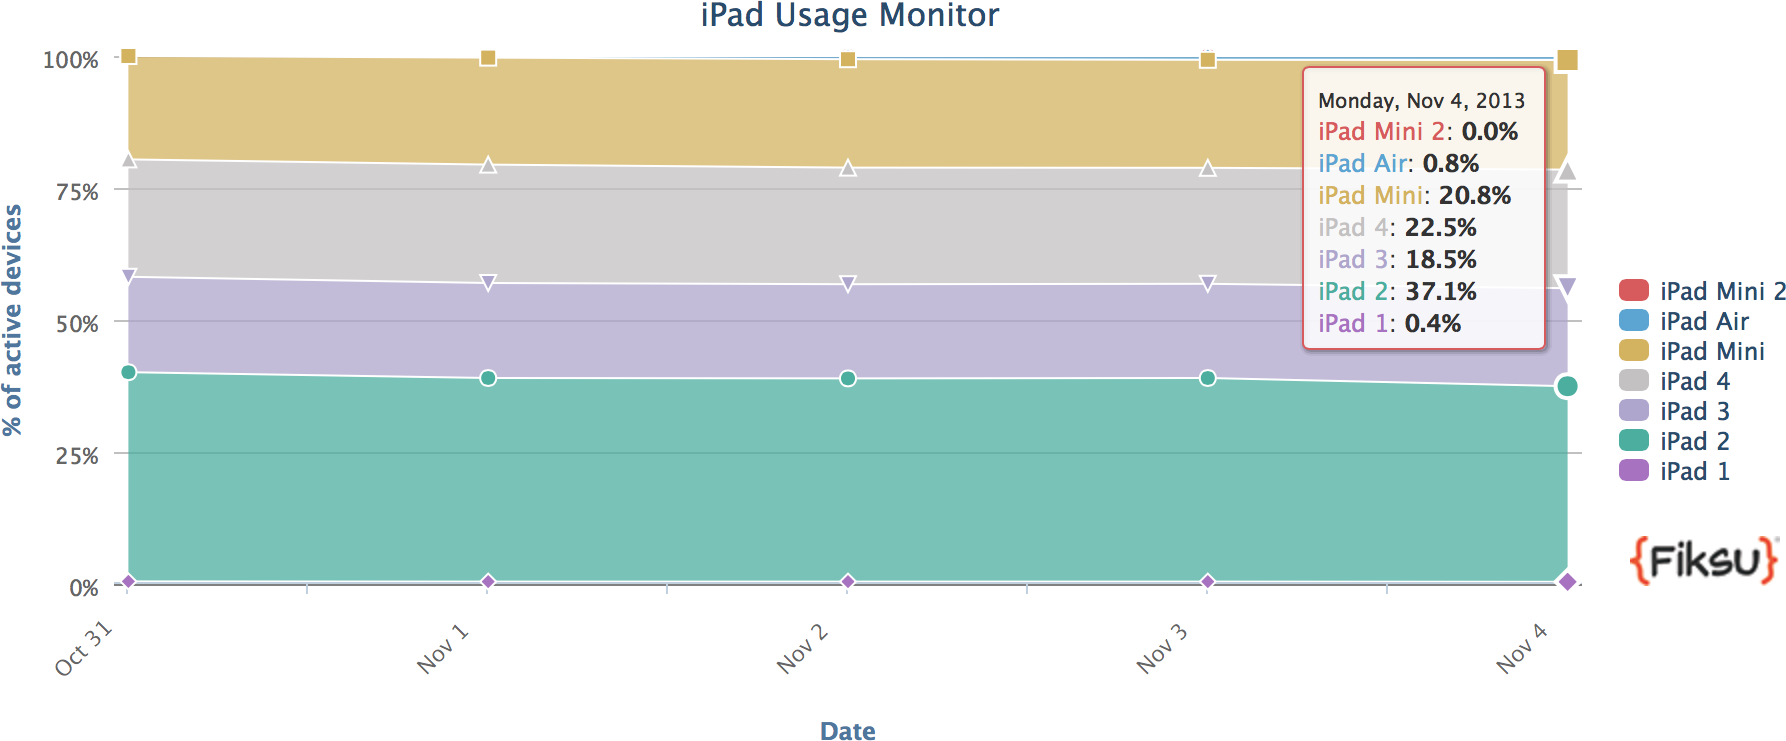 Gráfico da Fiksu com o market share do iPad Air